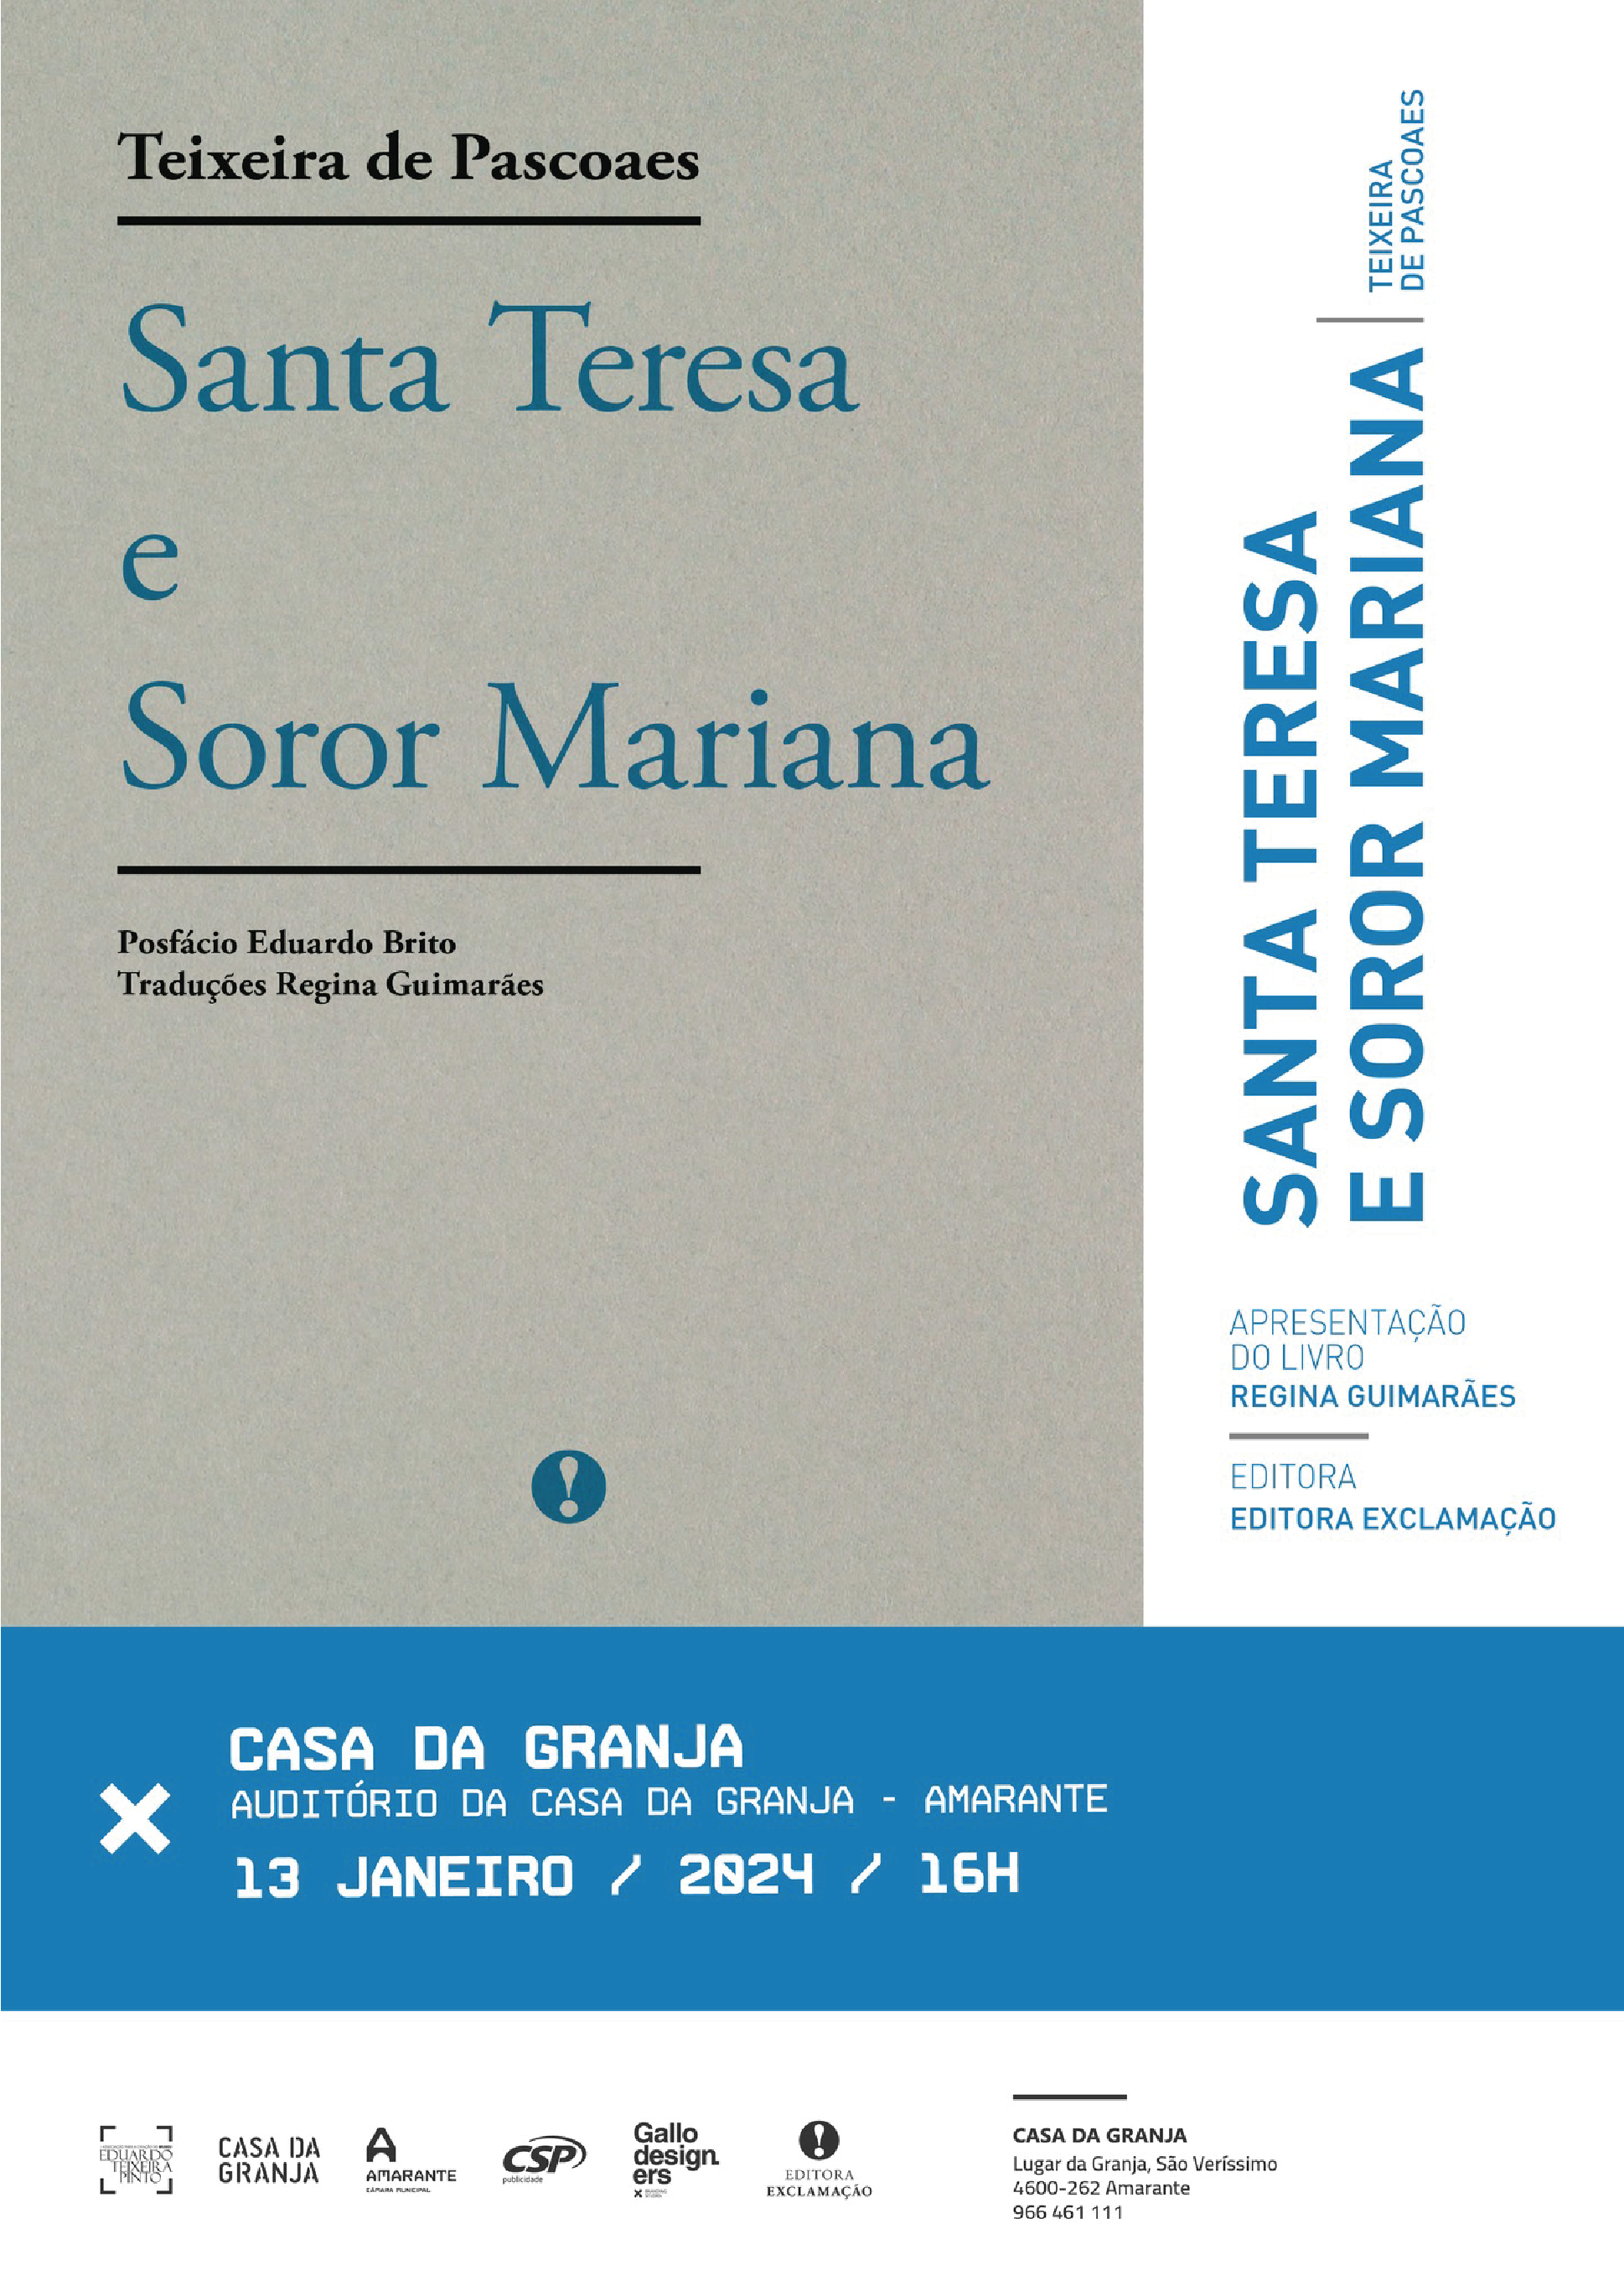 Apresentação do livro “Santa Teresa e Soror Mariana”